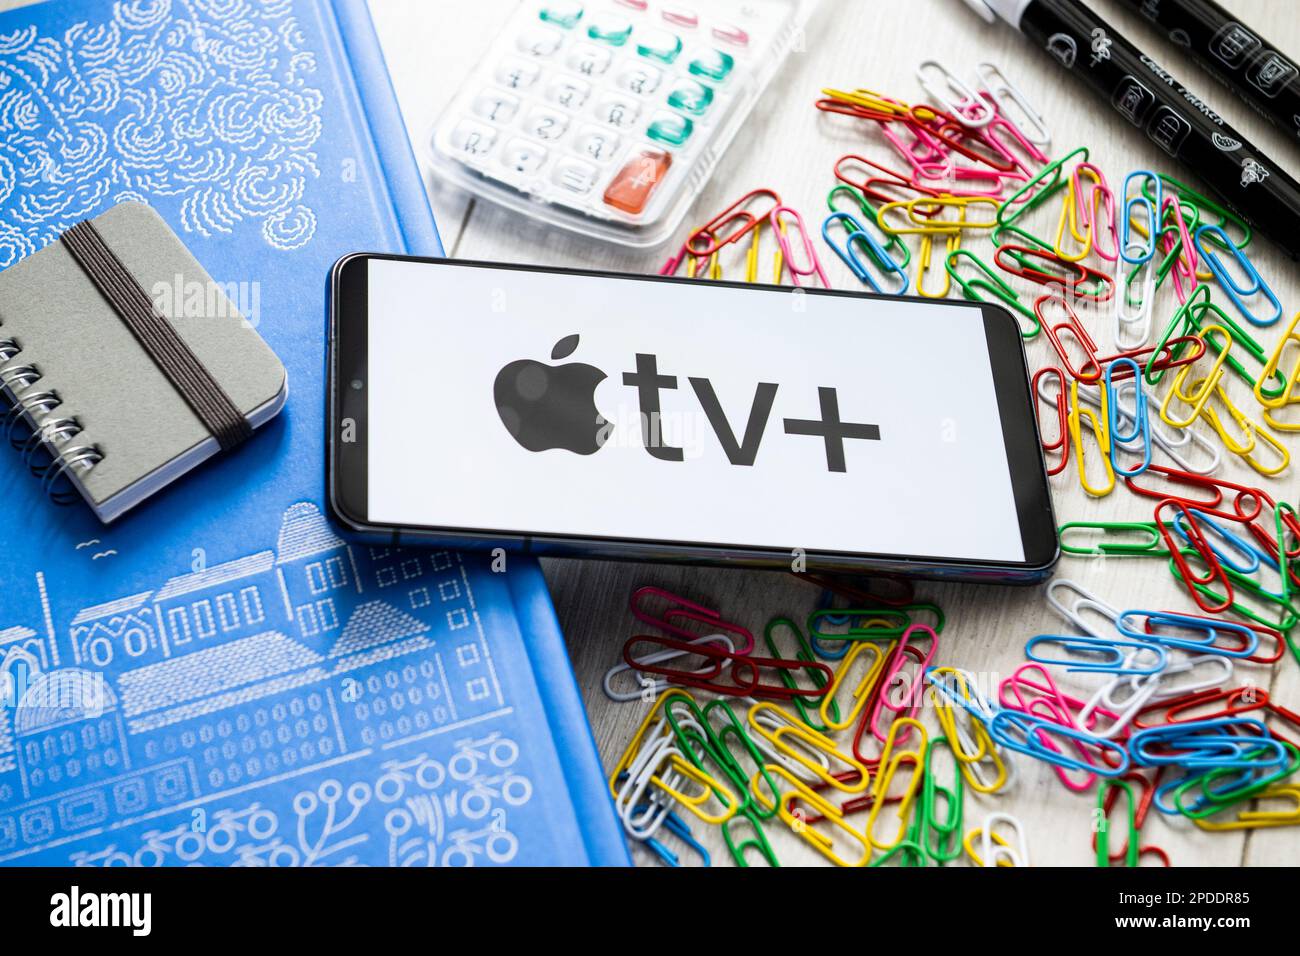 In questa illustrazione, il logo Apple TV + viene visualizzato sullo smartphone. Foto Stock